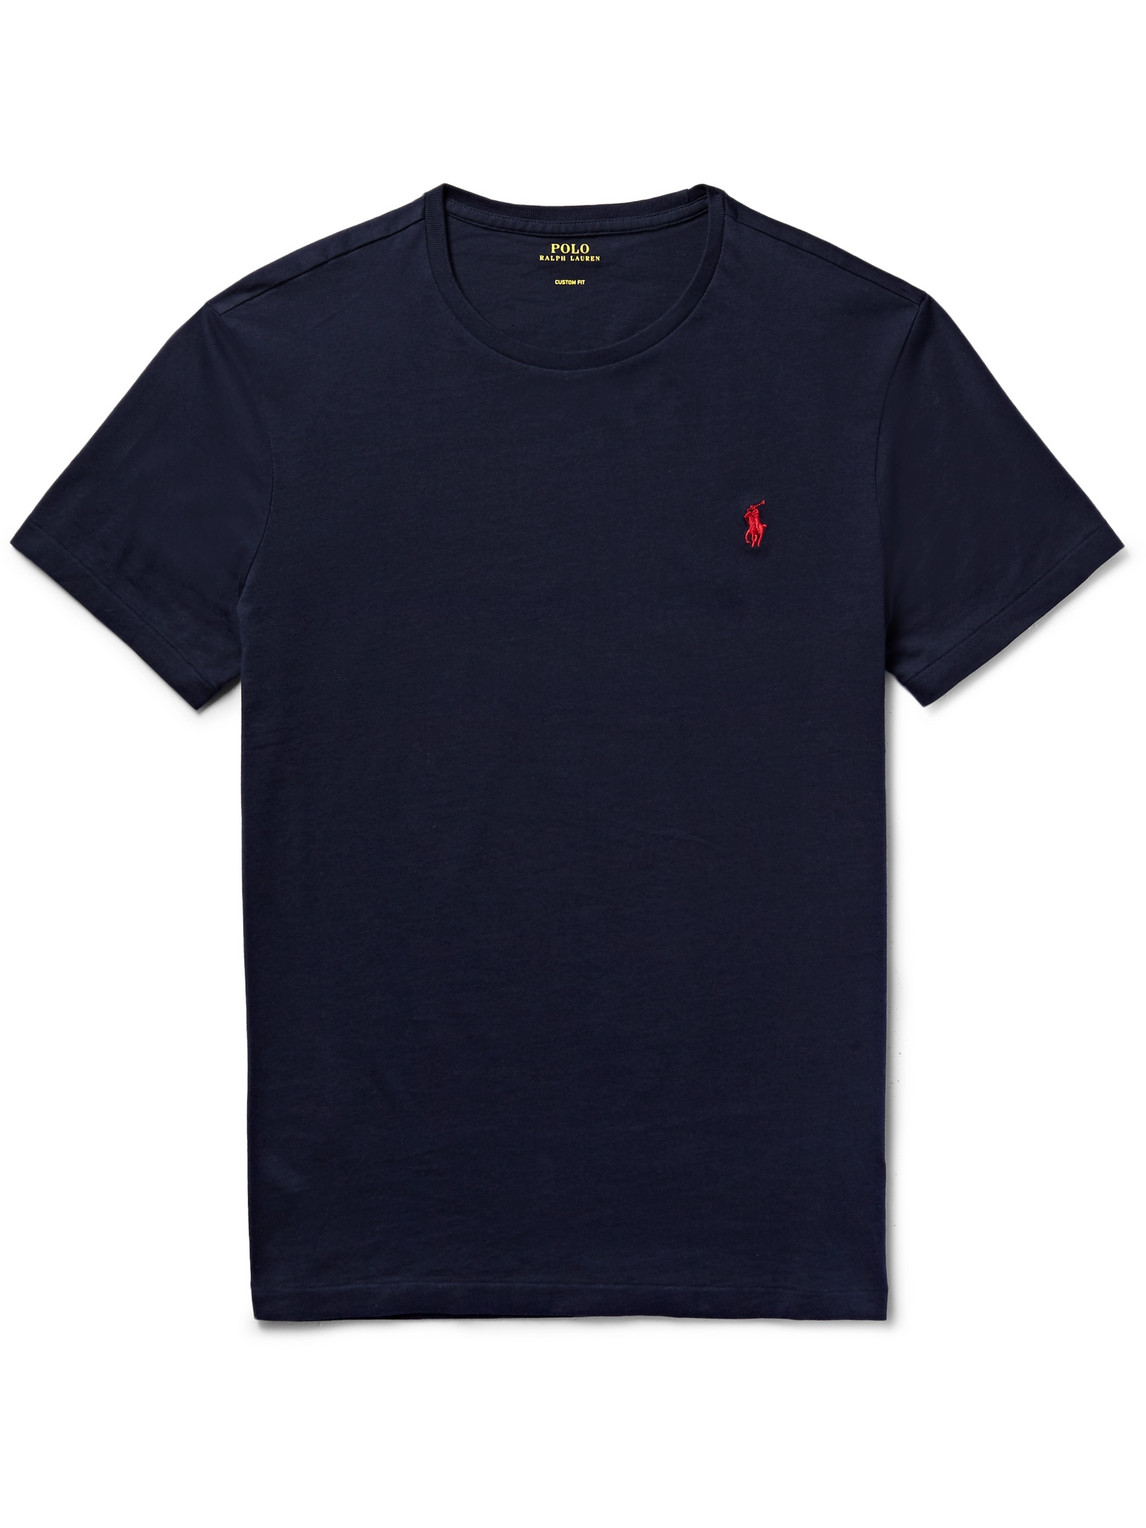 Polo Ralph Lauren - Cotton-Jersey T-Shirt - Men - Blue - XL for Men